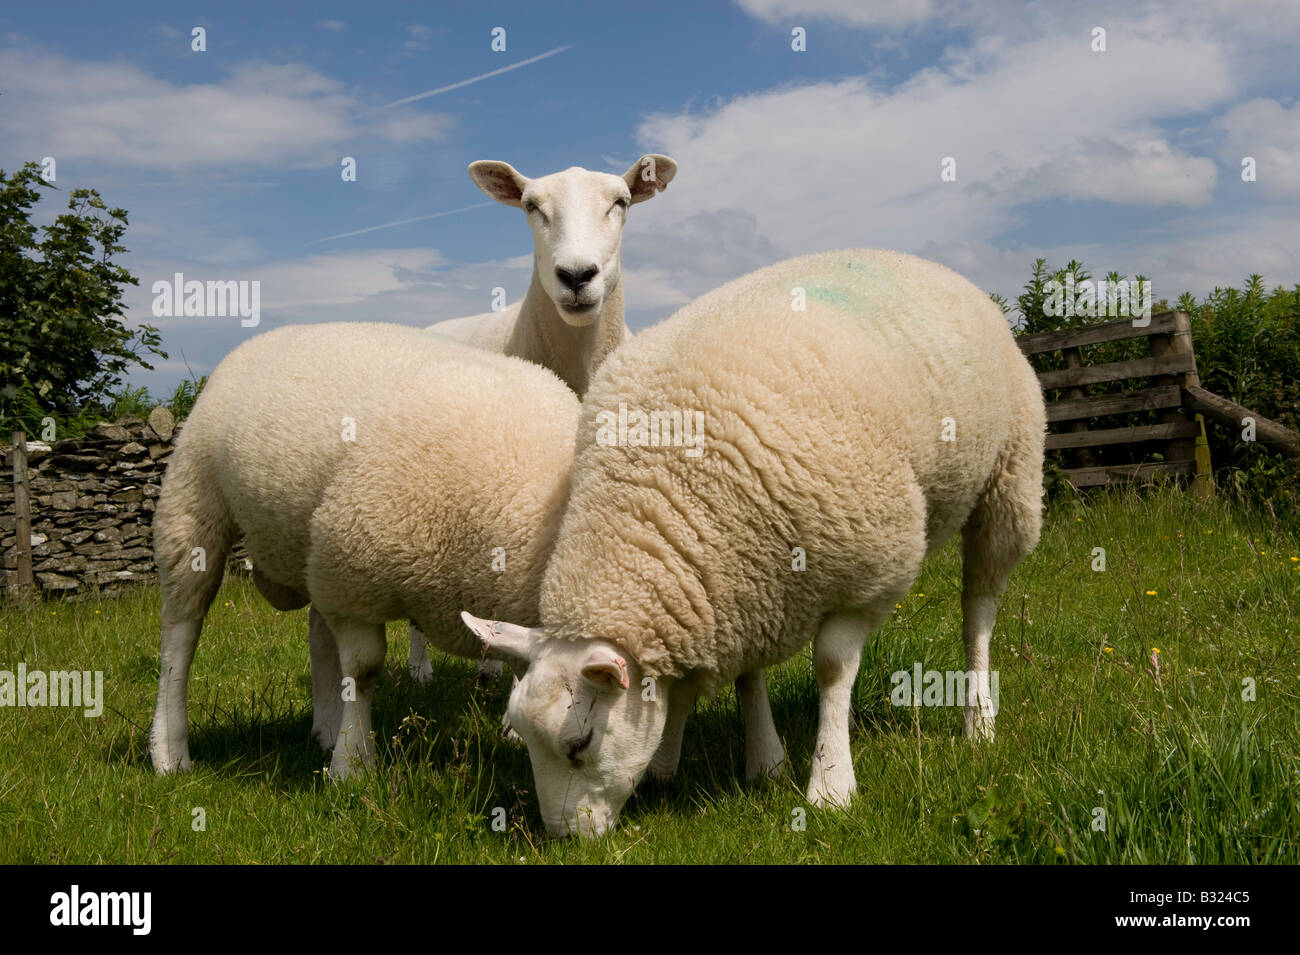 Lleyn ewe with texel sired lambs at foot Lockerbie Scotland Stock Photo